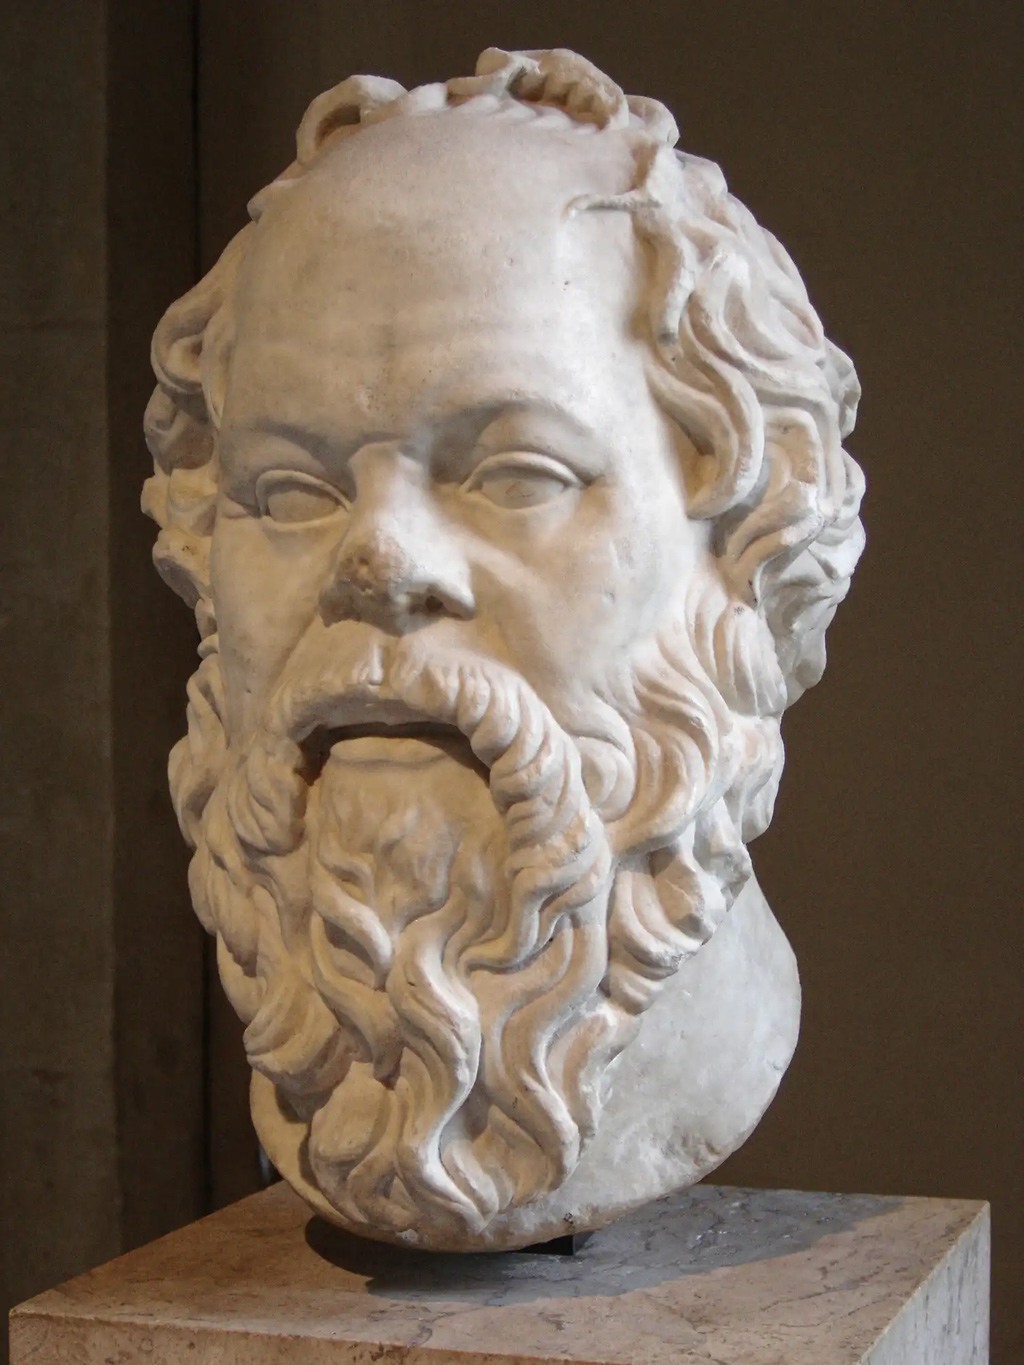 رأس رخامي لـ(سقراط) معروض في متحف اللوفر في باريس. يعتقد أن تاريخه يعود للقرن الأول قبل الميلاد.